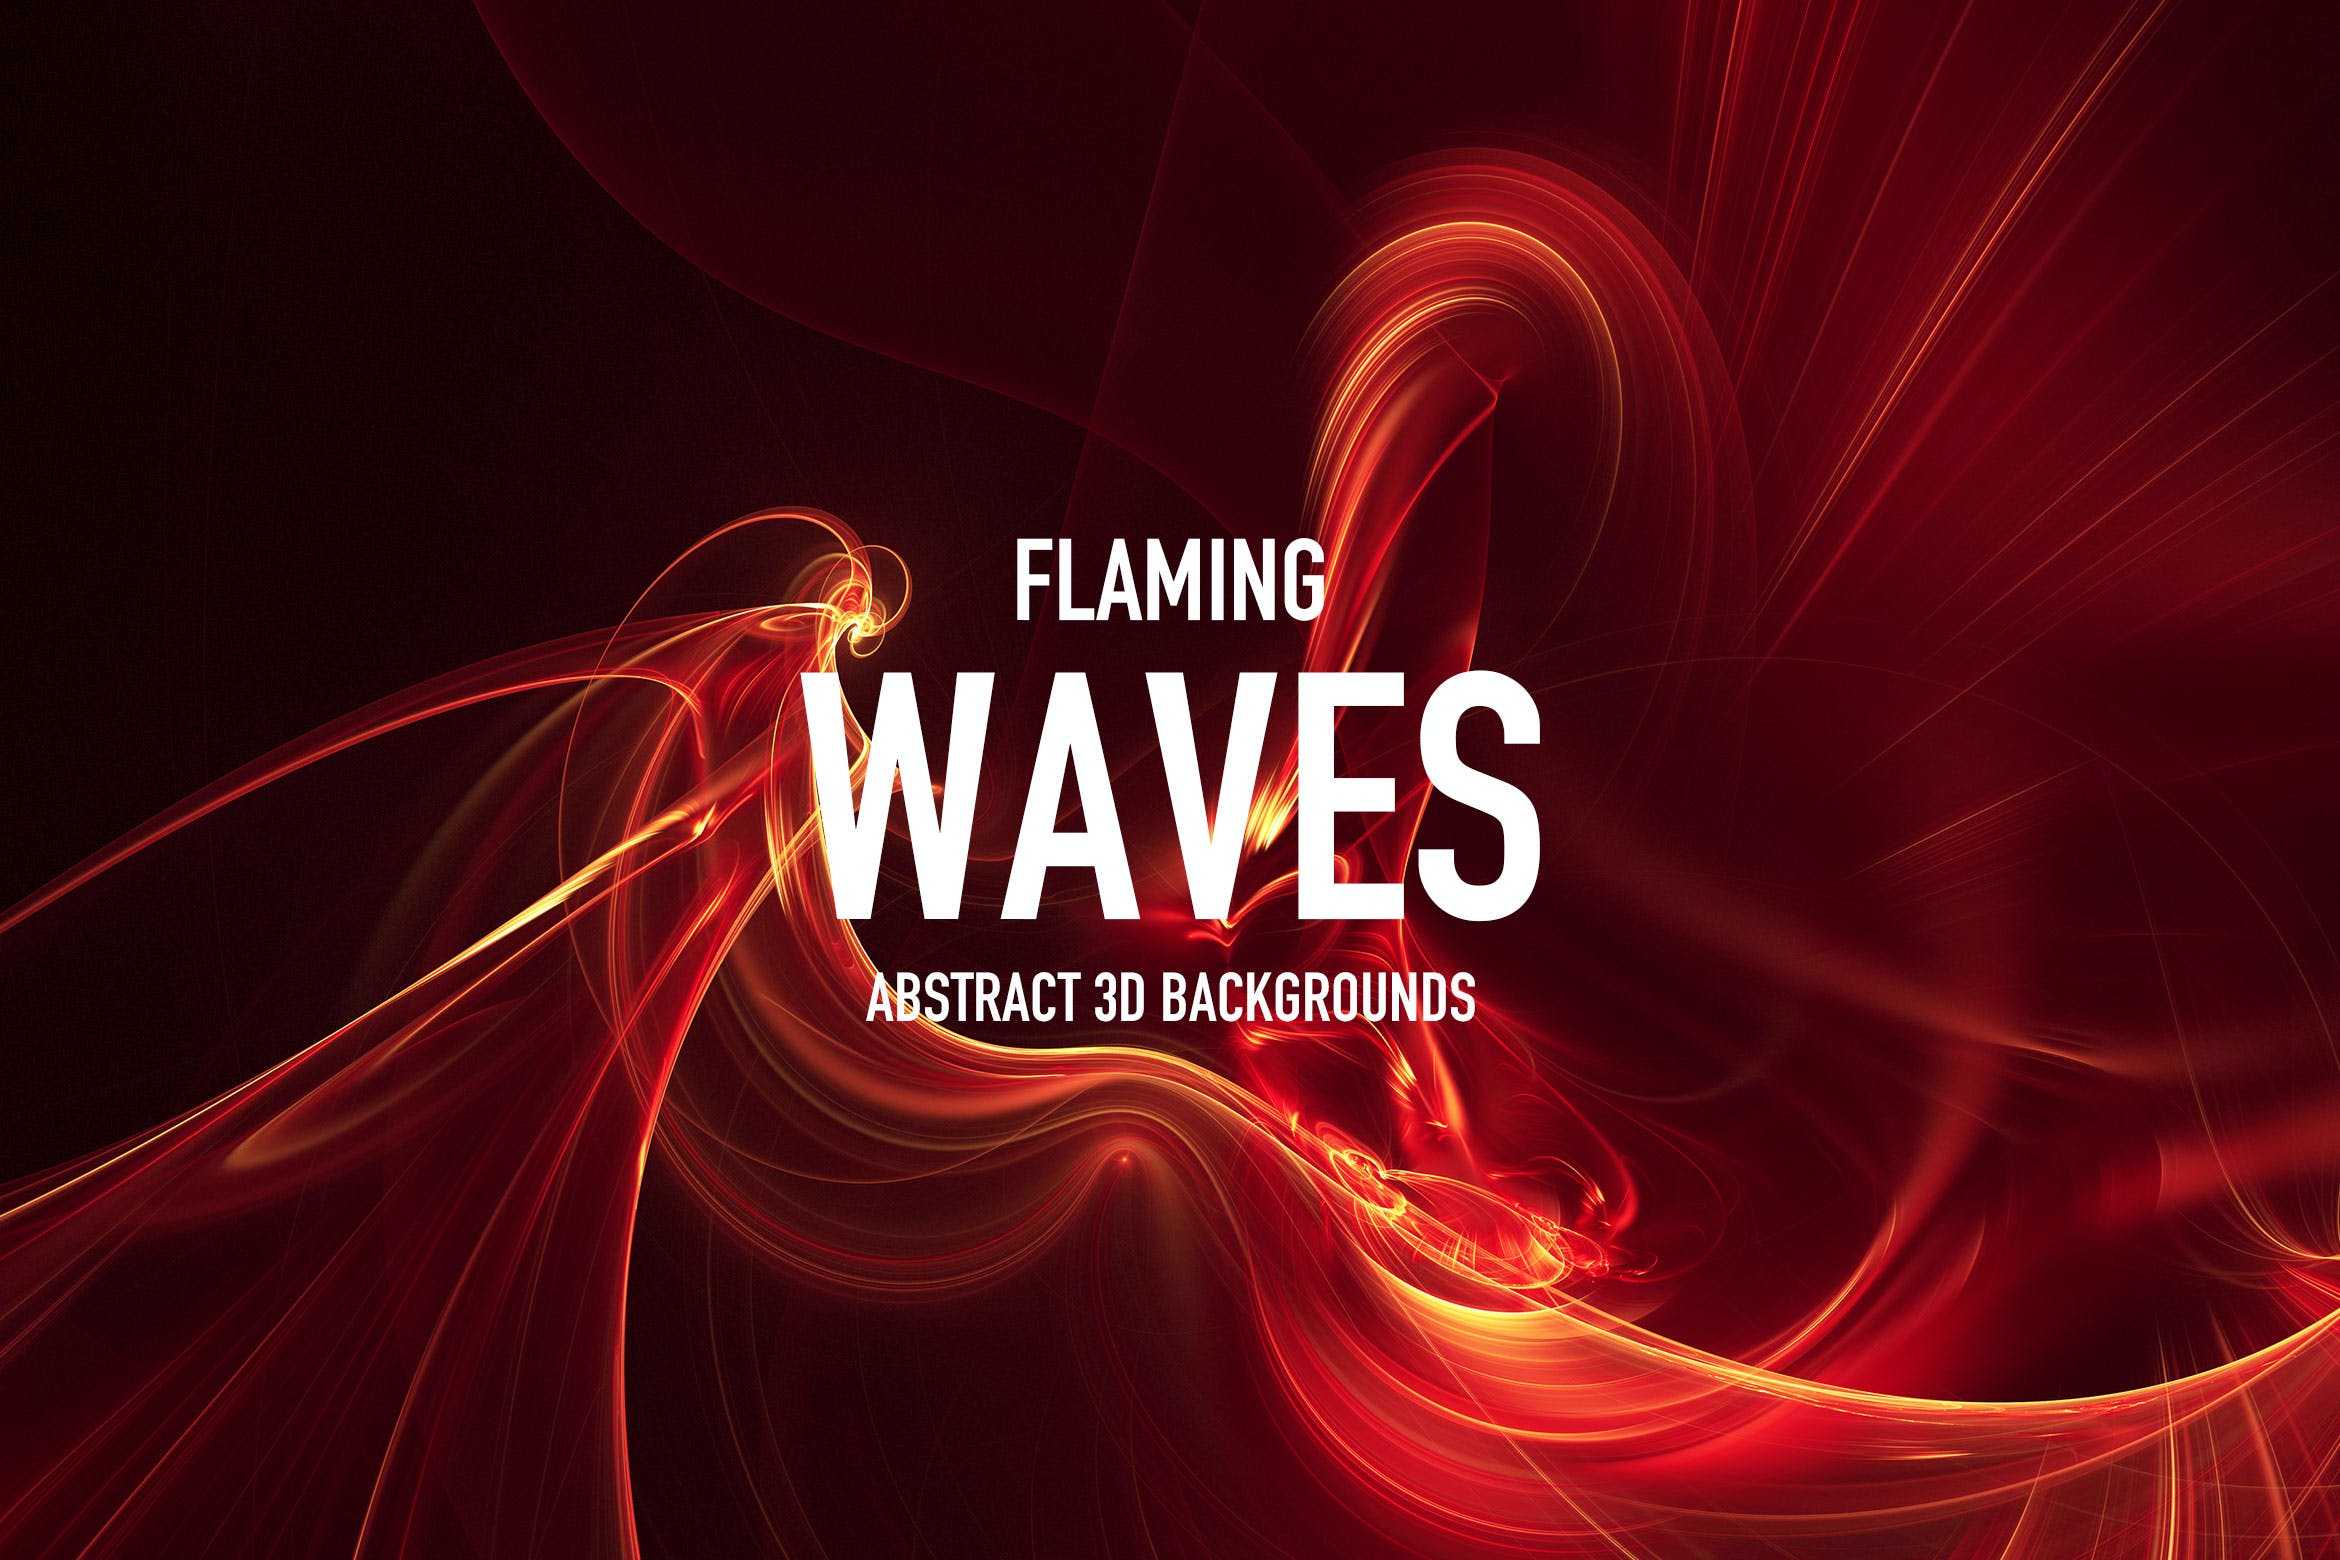 火焰波浪线条背景 Flaming Waves Backgrounds 图片素材 第1张